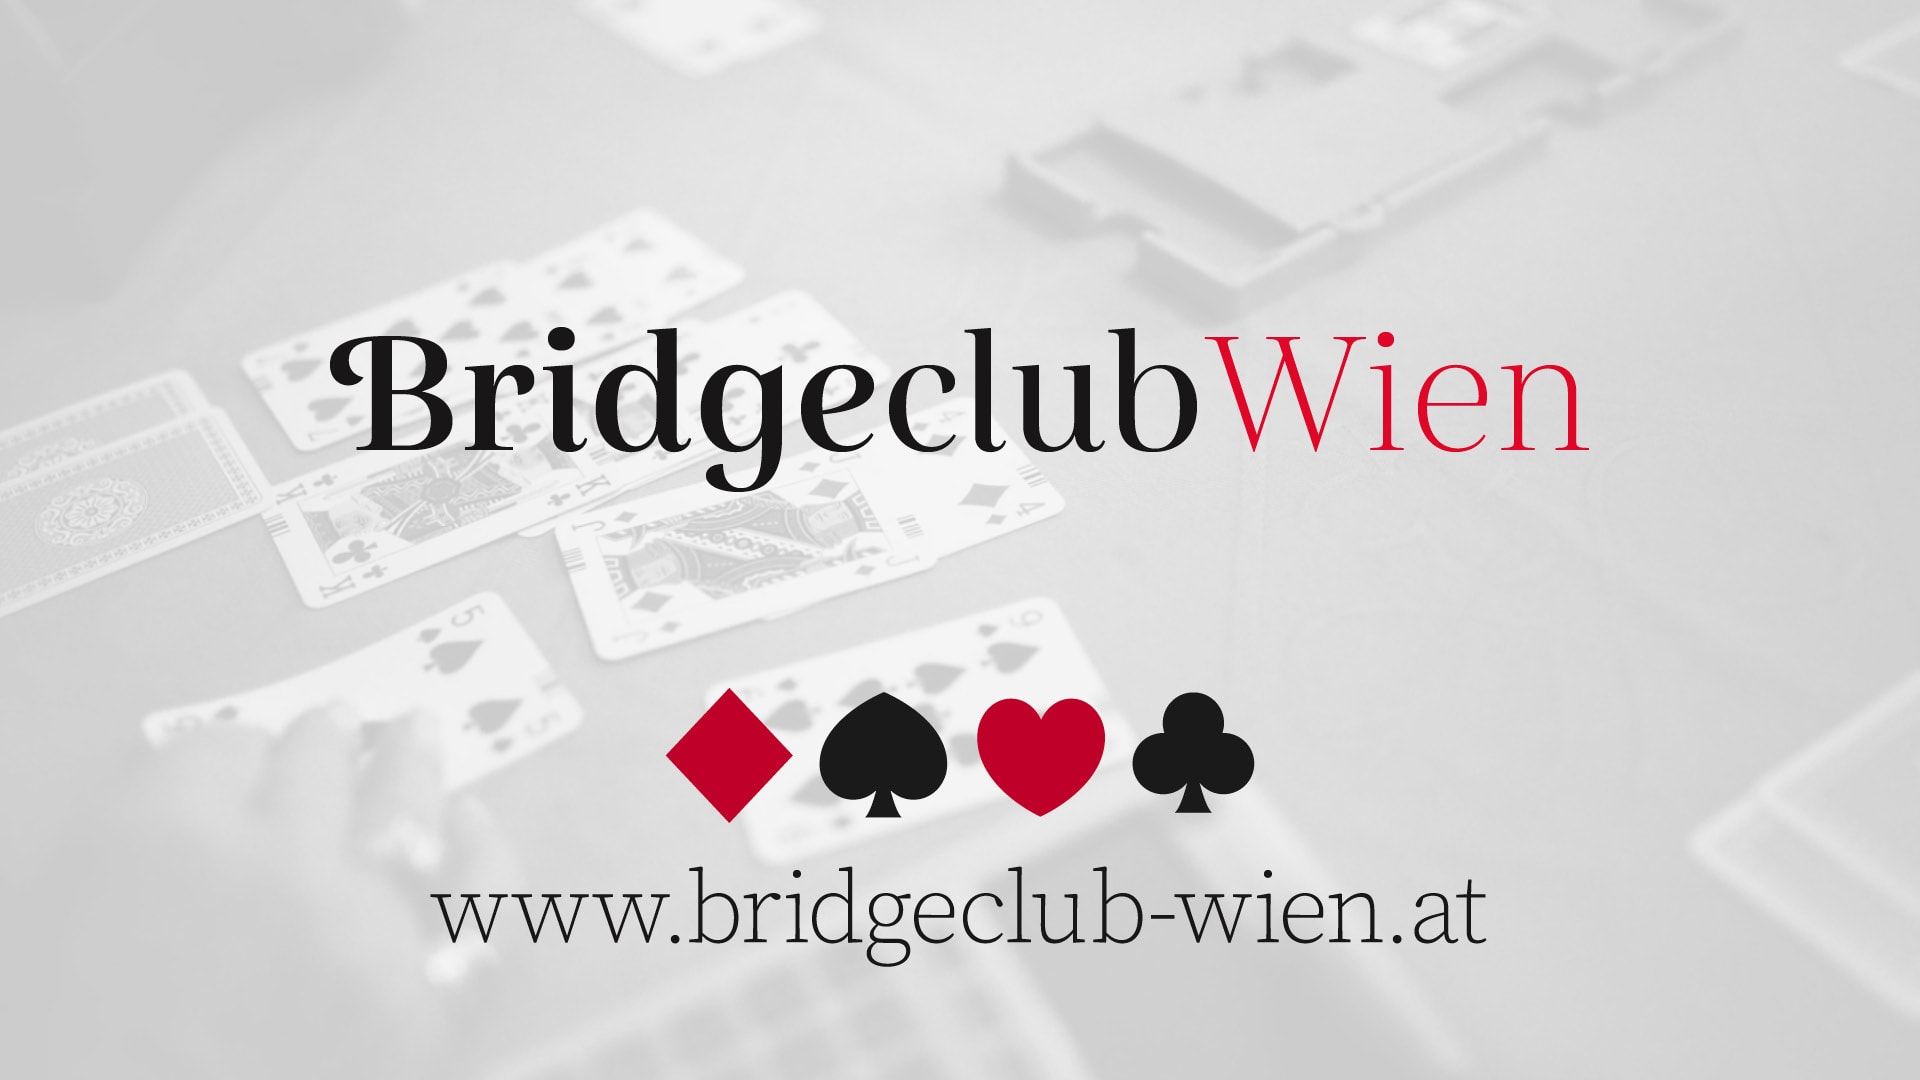 (c) Bridgeclub-wien.at